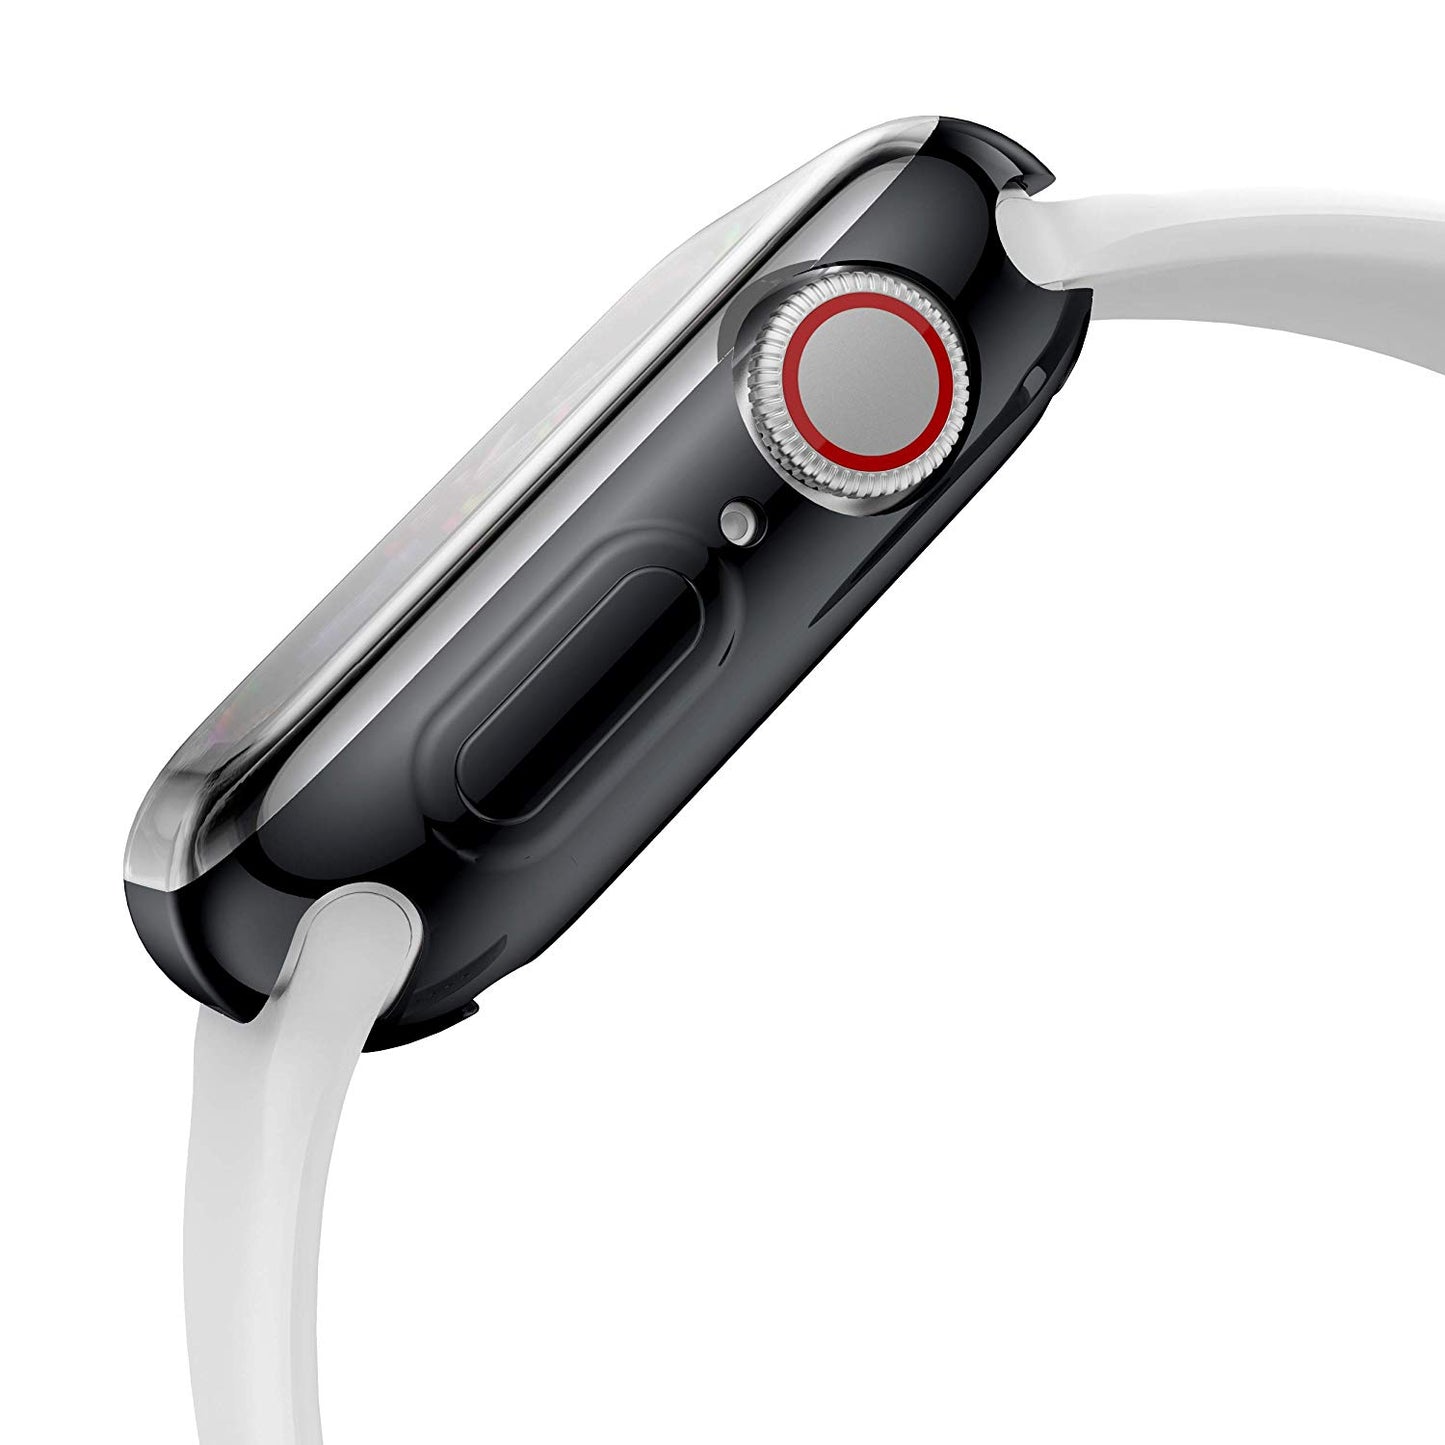 ArktisPRO 360 FULLBODY Case für Apple Watch 44 mm